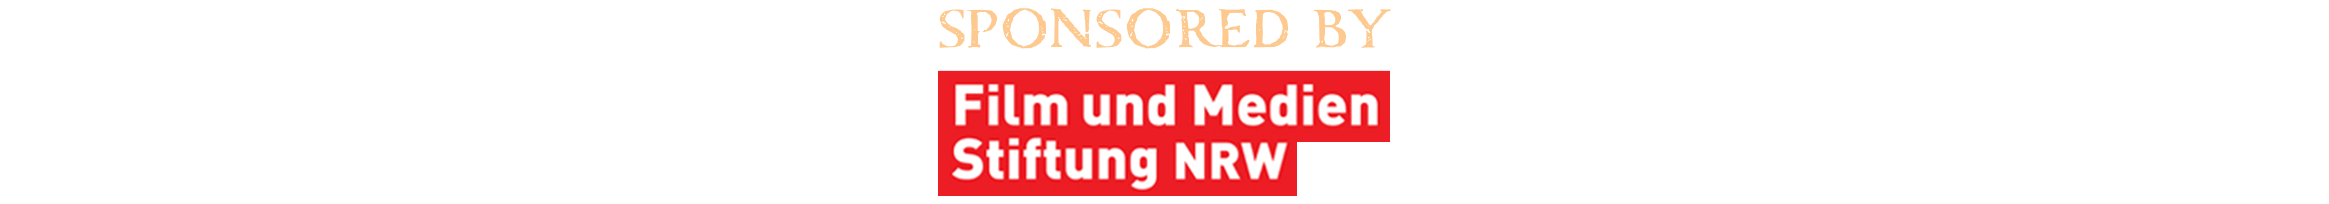 sponsored by Film- und Medienstiftung NRW